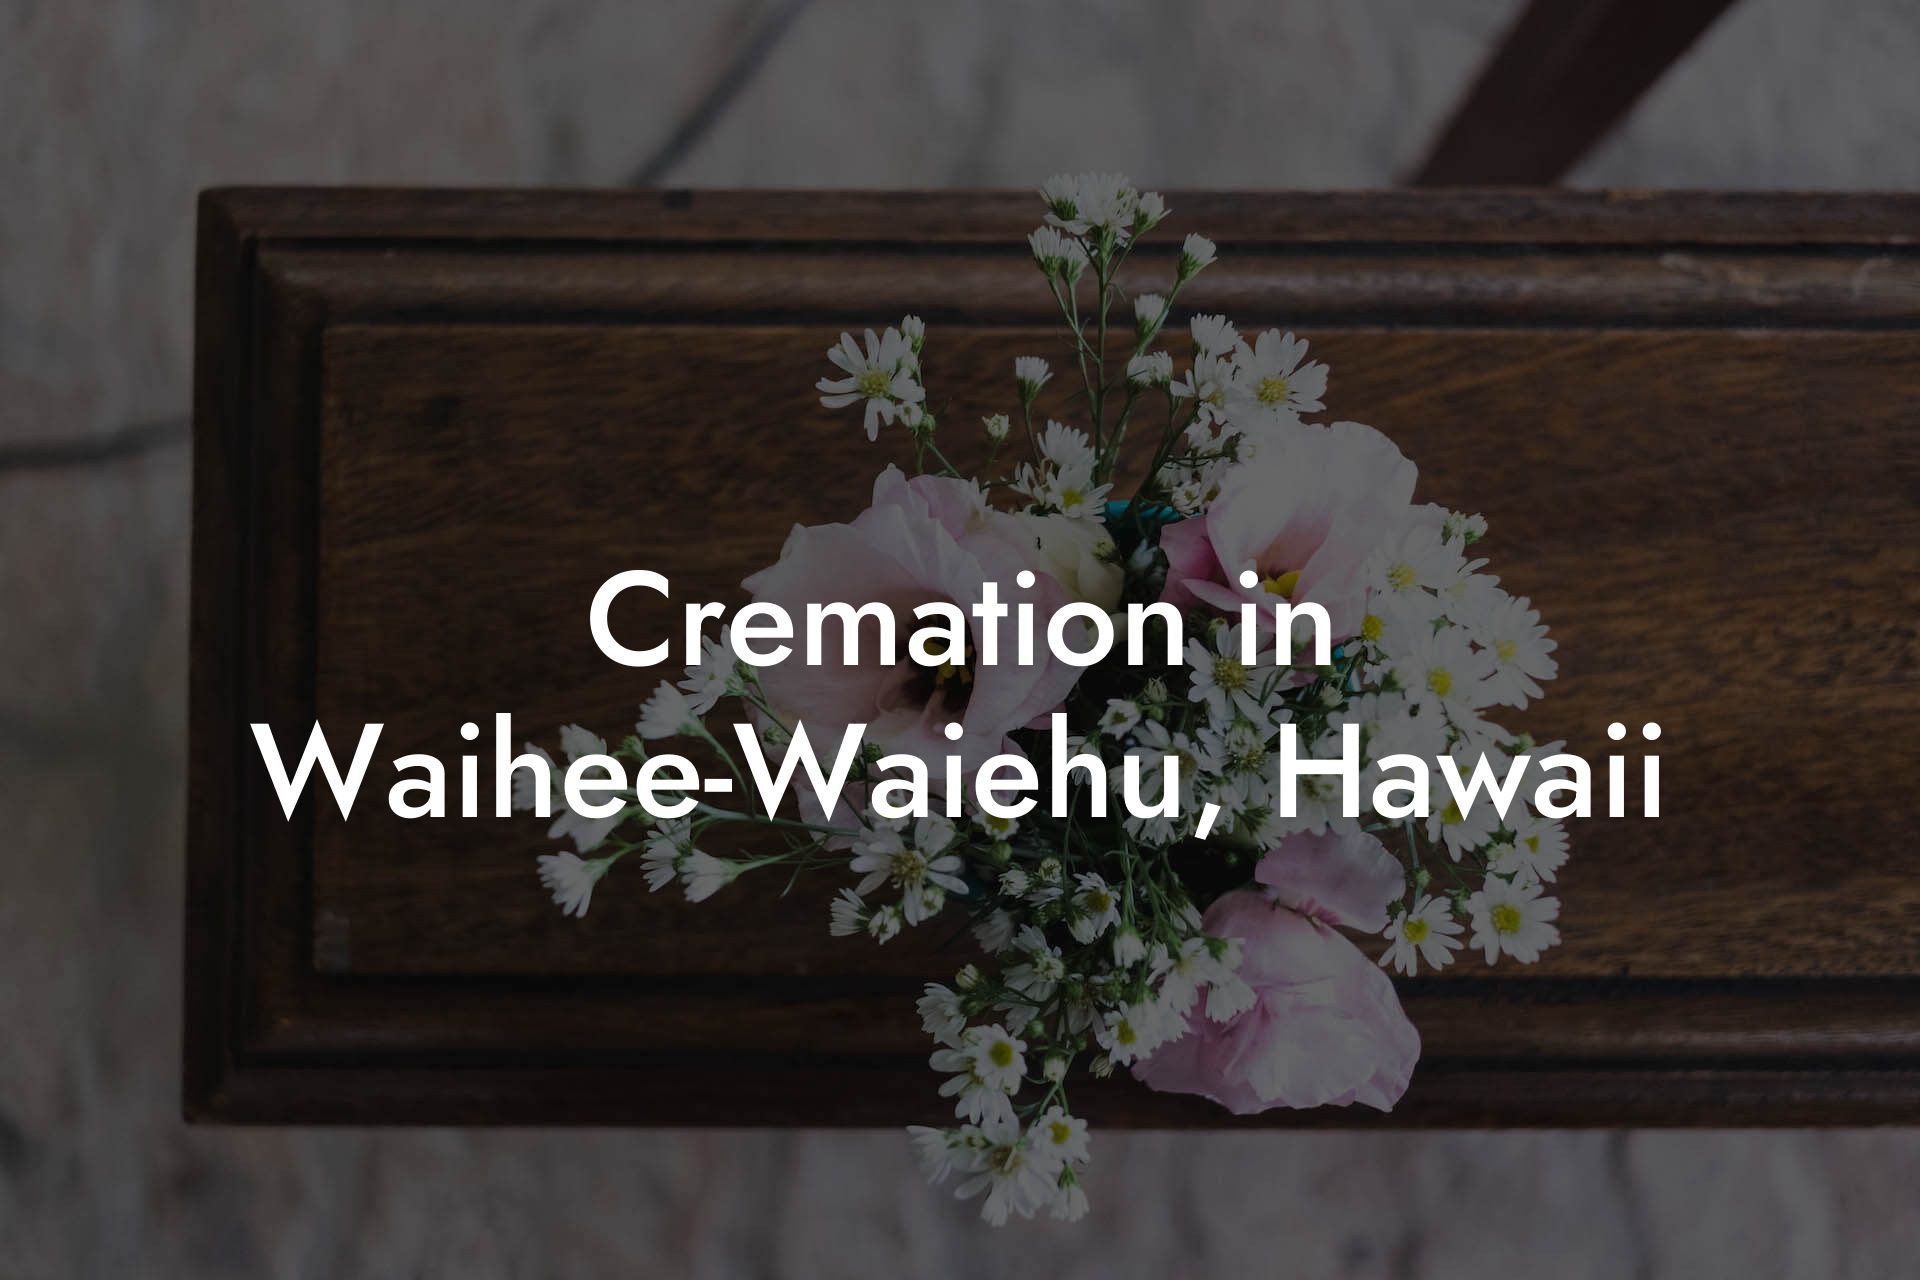 Cremation in Waihee-Waiehu, Hawaii